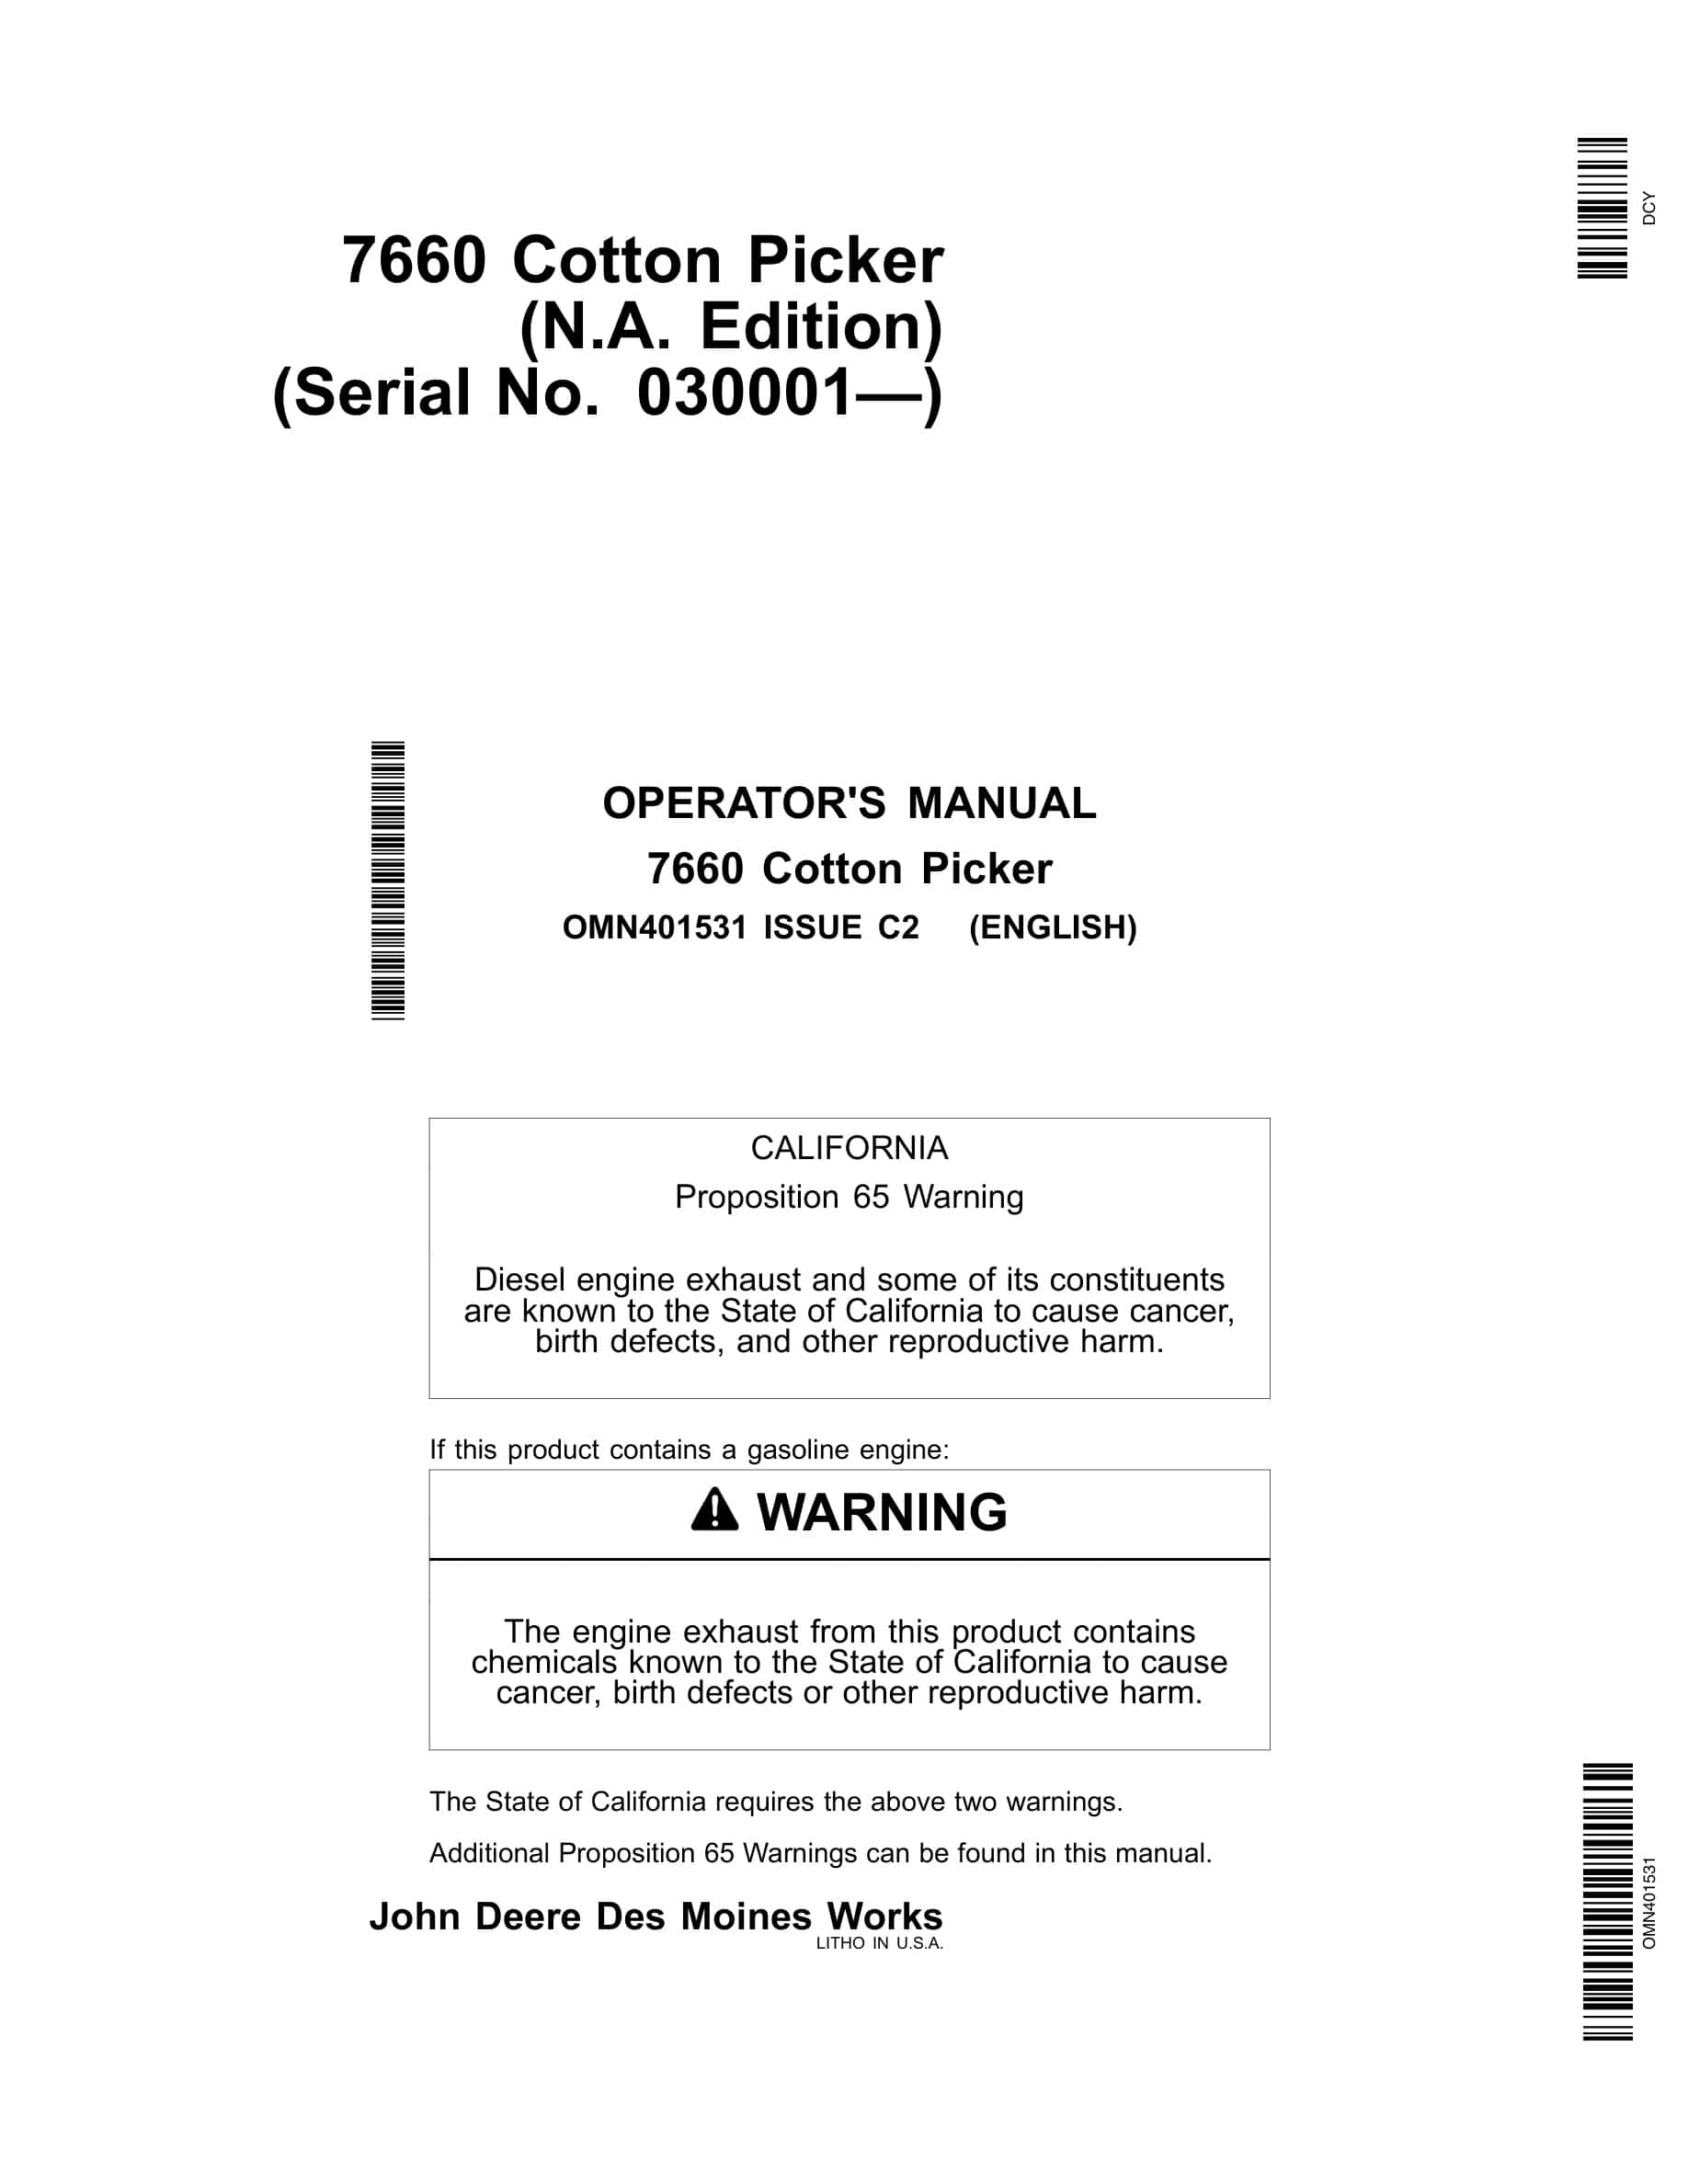 John Deere 7660 Cotton Picker Operator Manual OMN401531-1